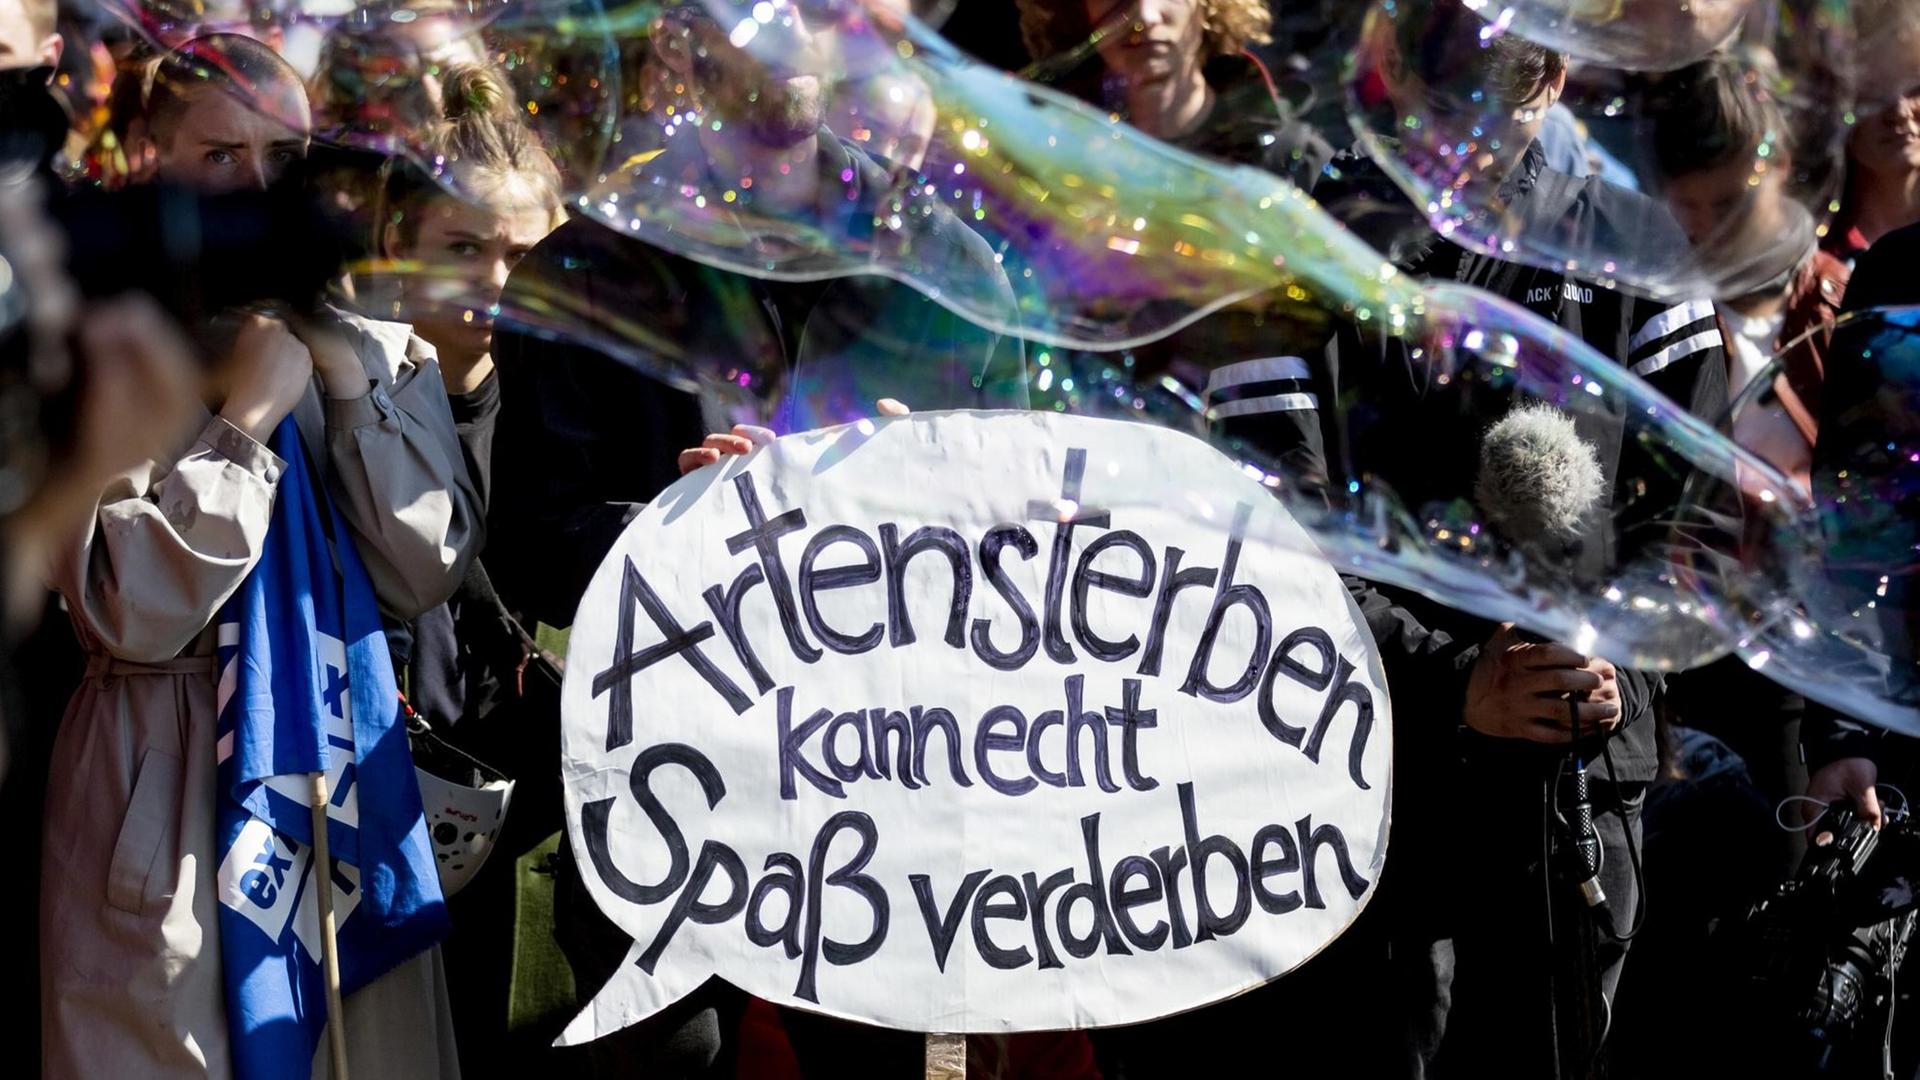 "Artensterben kann echt Spaß verderben" steht bei einer Kundgebung der Bewegung Extinction Rebellion an der Jannowitzbrücke auf dem Plakat eines Teilnehmers, während Seifenblasen vorbeiziehen